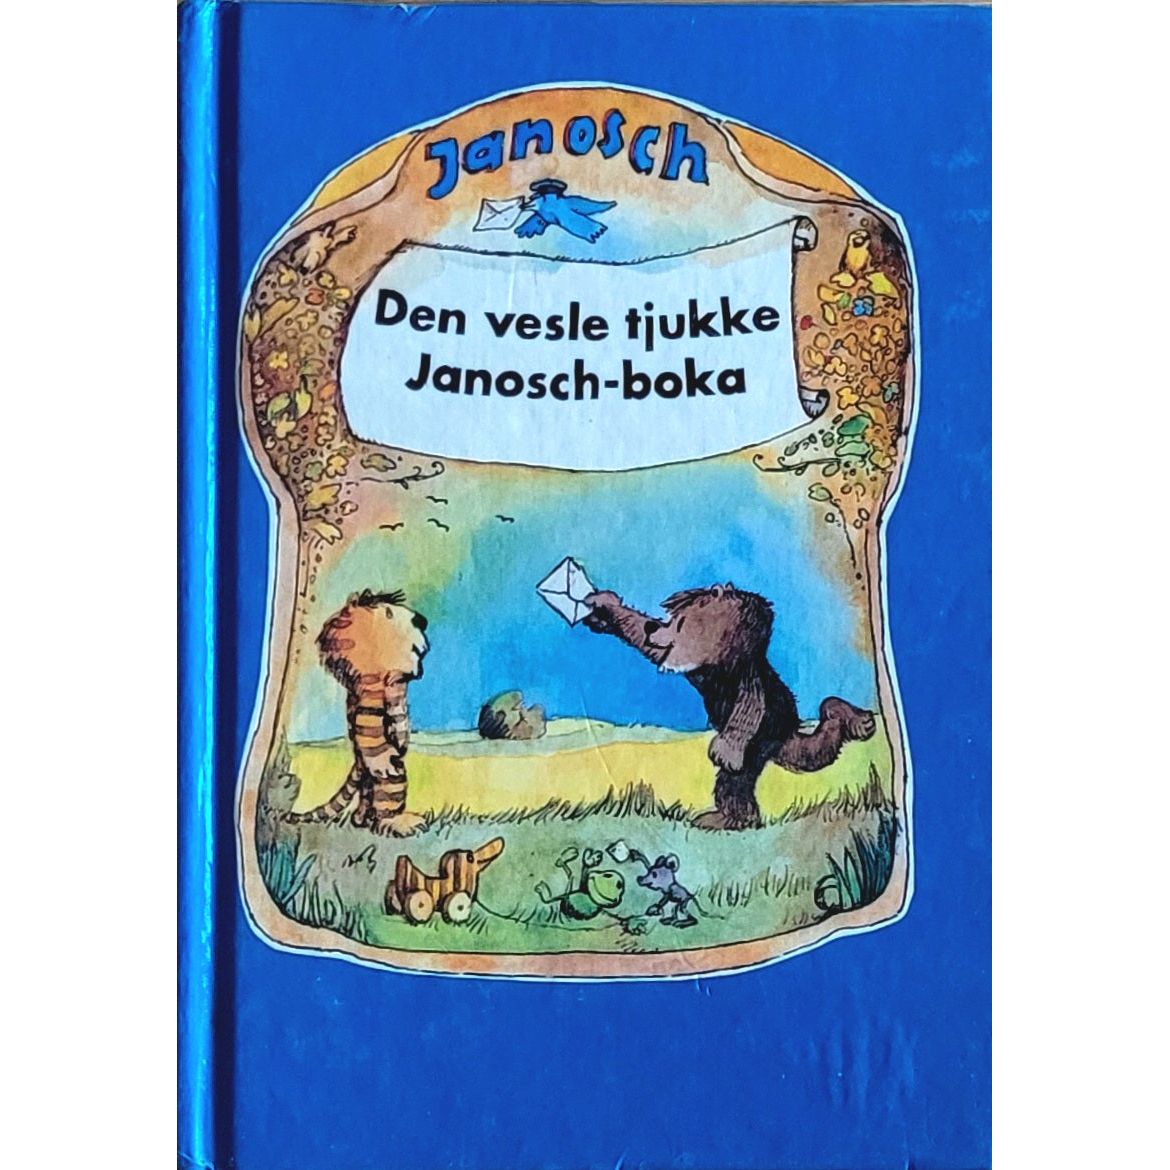 Den vesle tjukke Janosch-boka, brukte bøker av Janosch